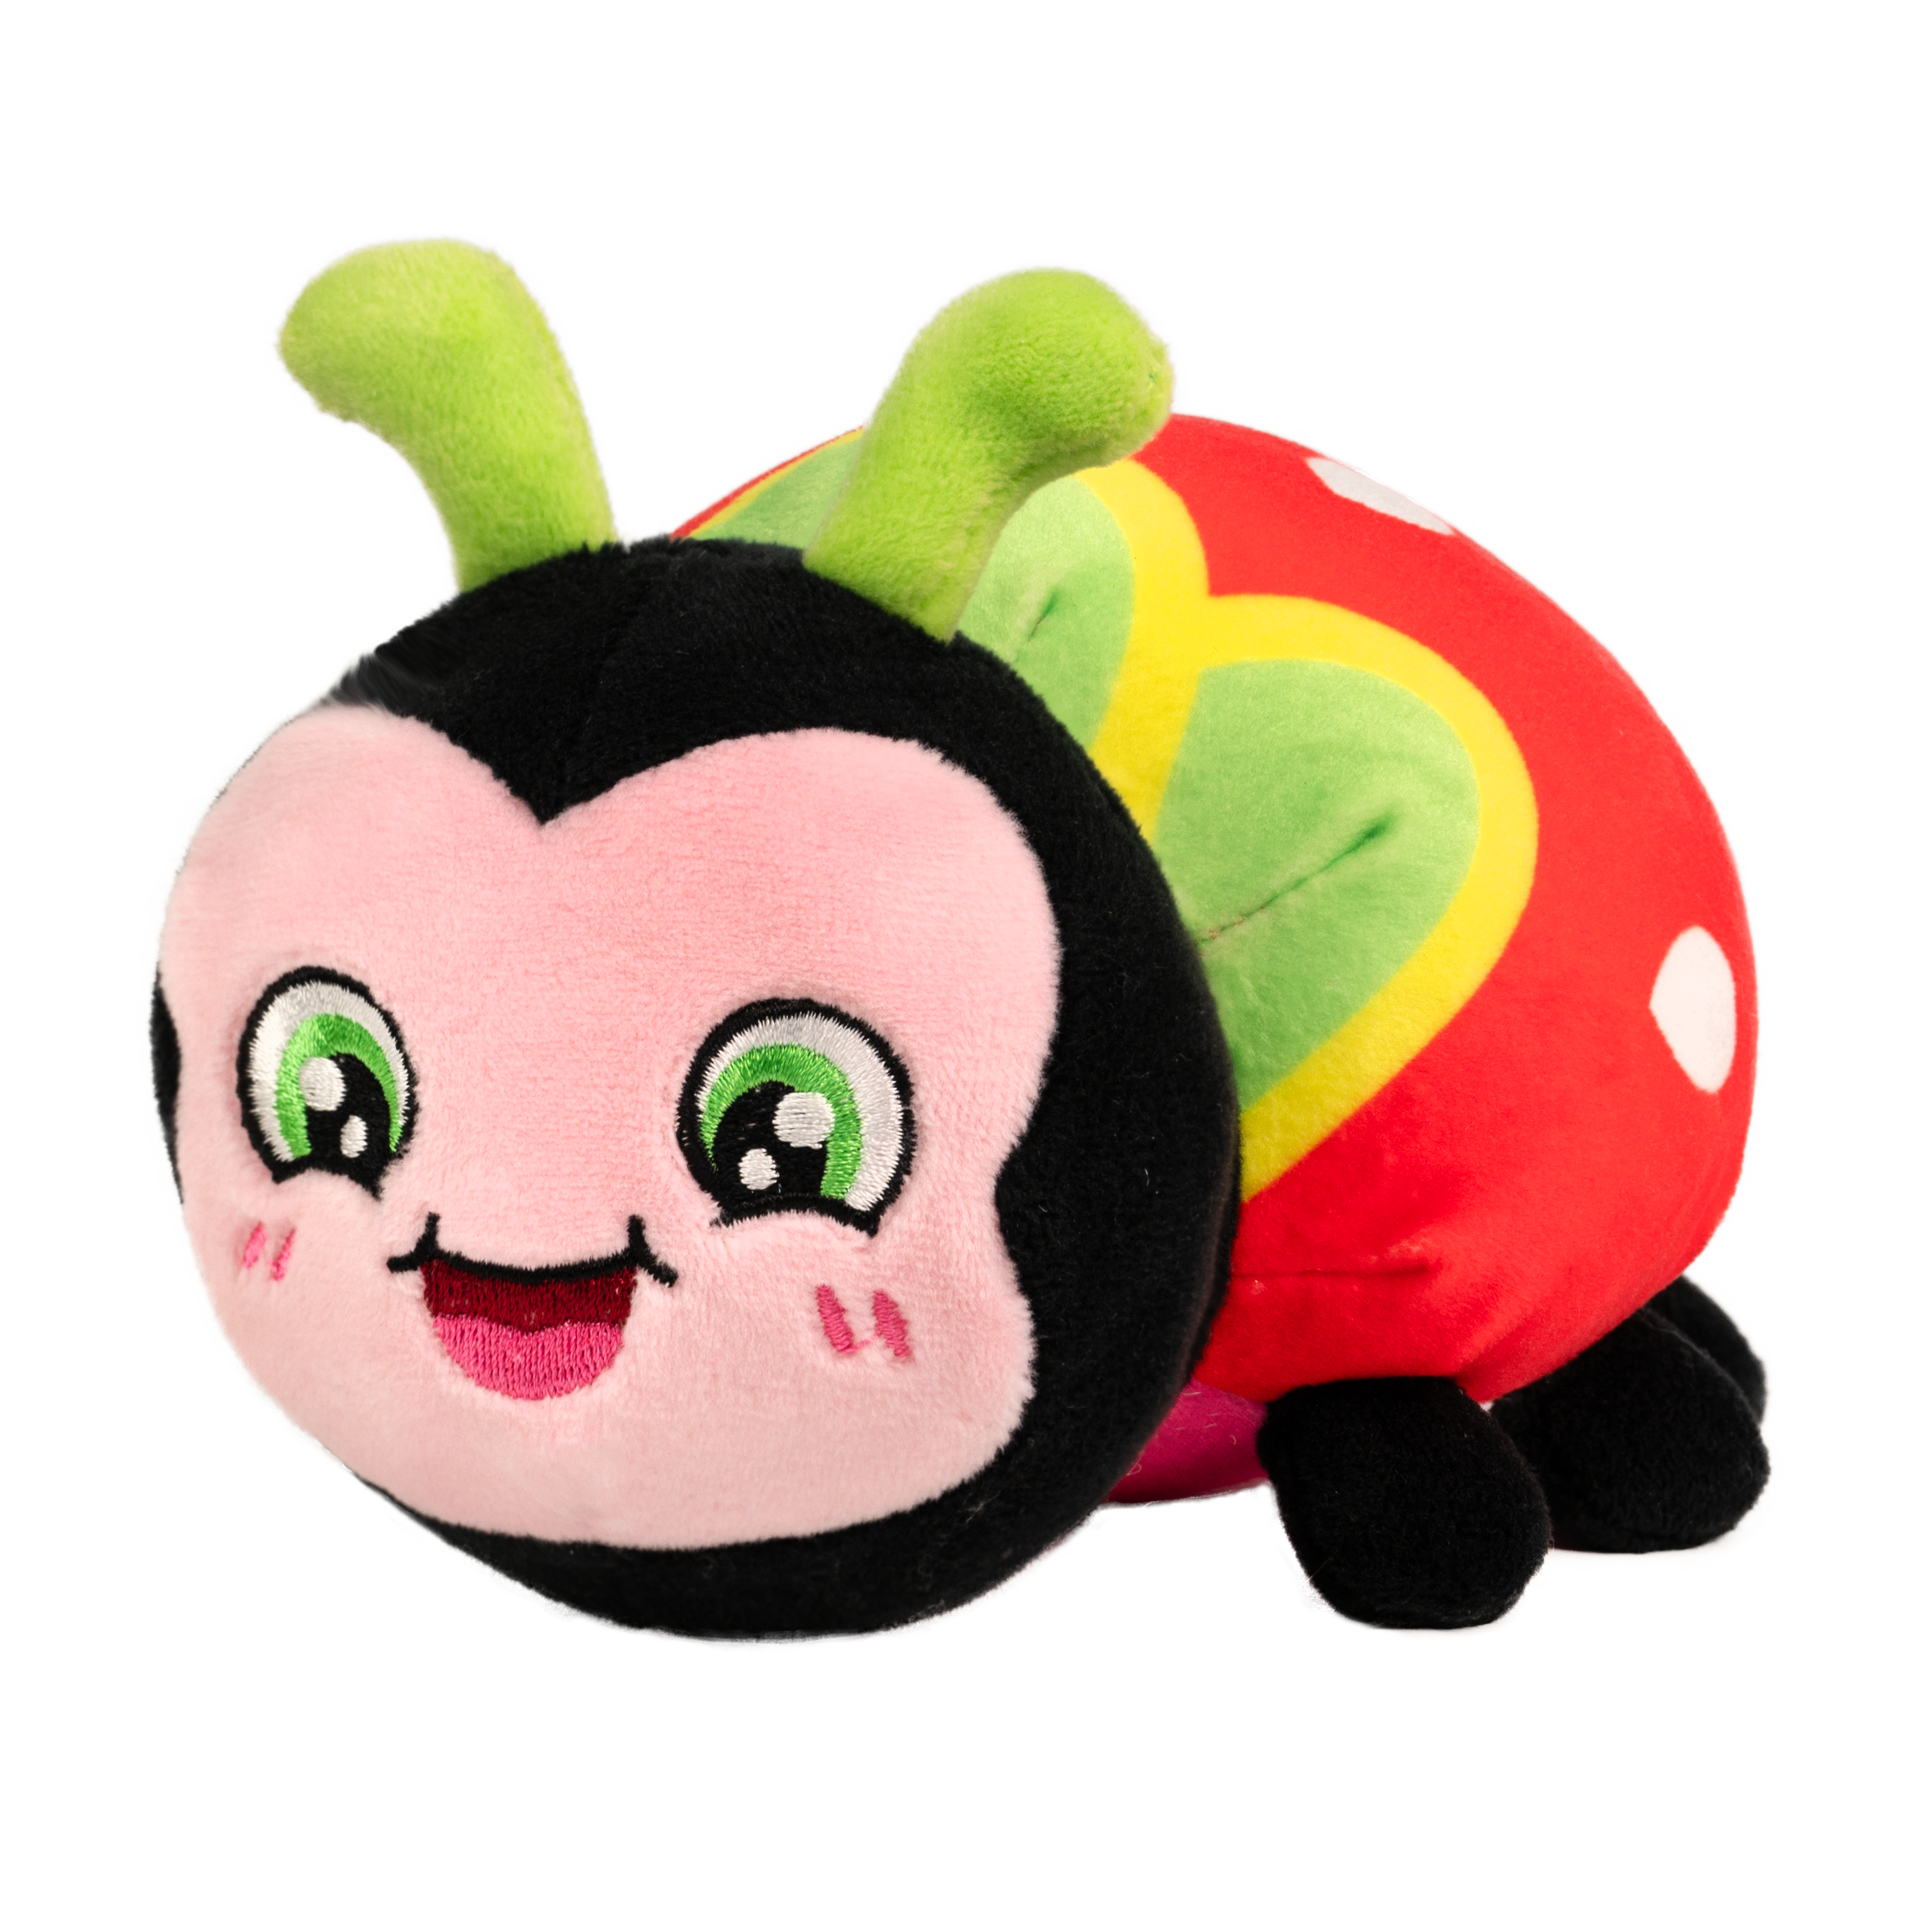 Snuggle Bugs: Ladybug (Sweet Strawberry) – Scentco Inc